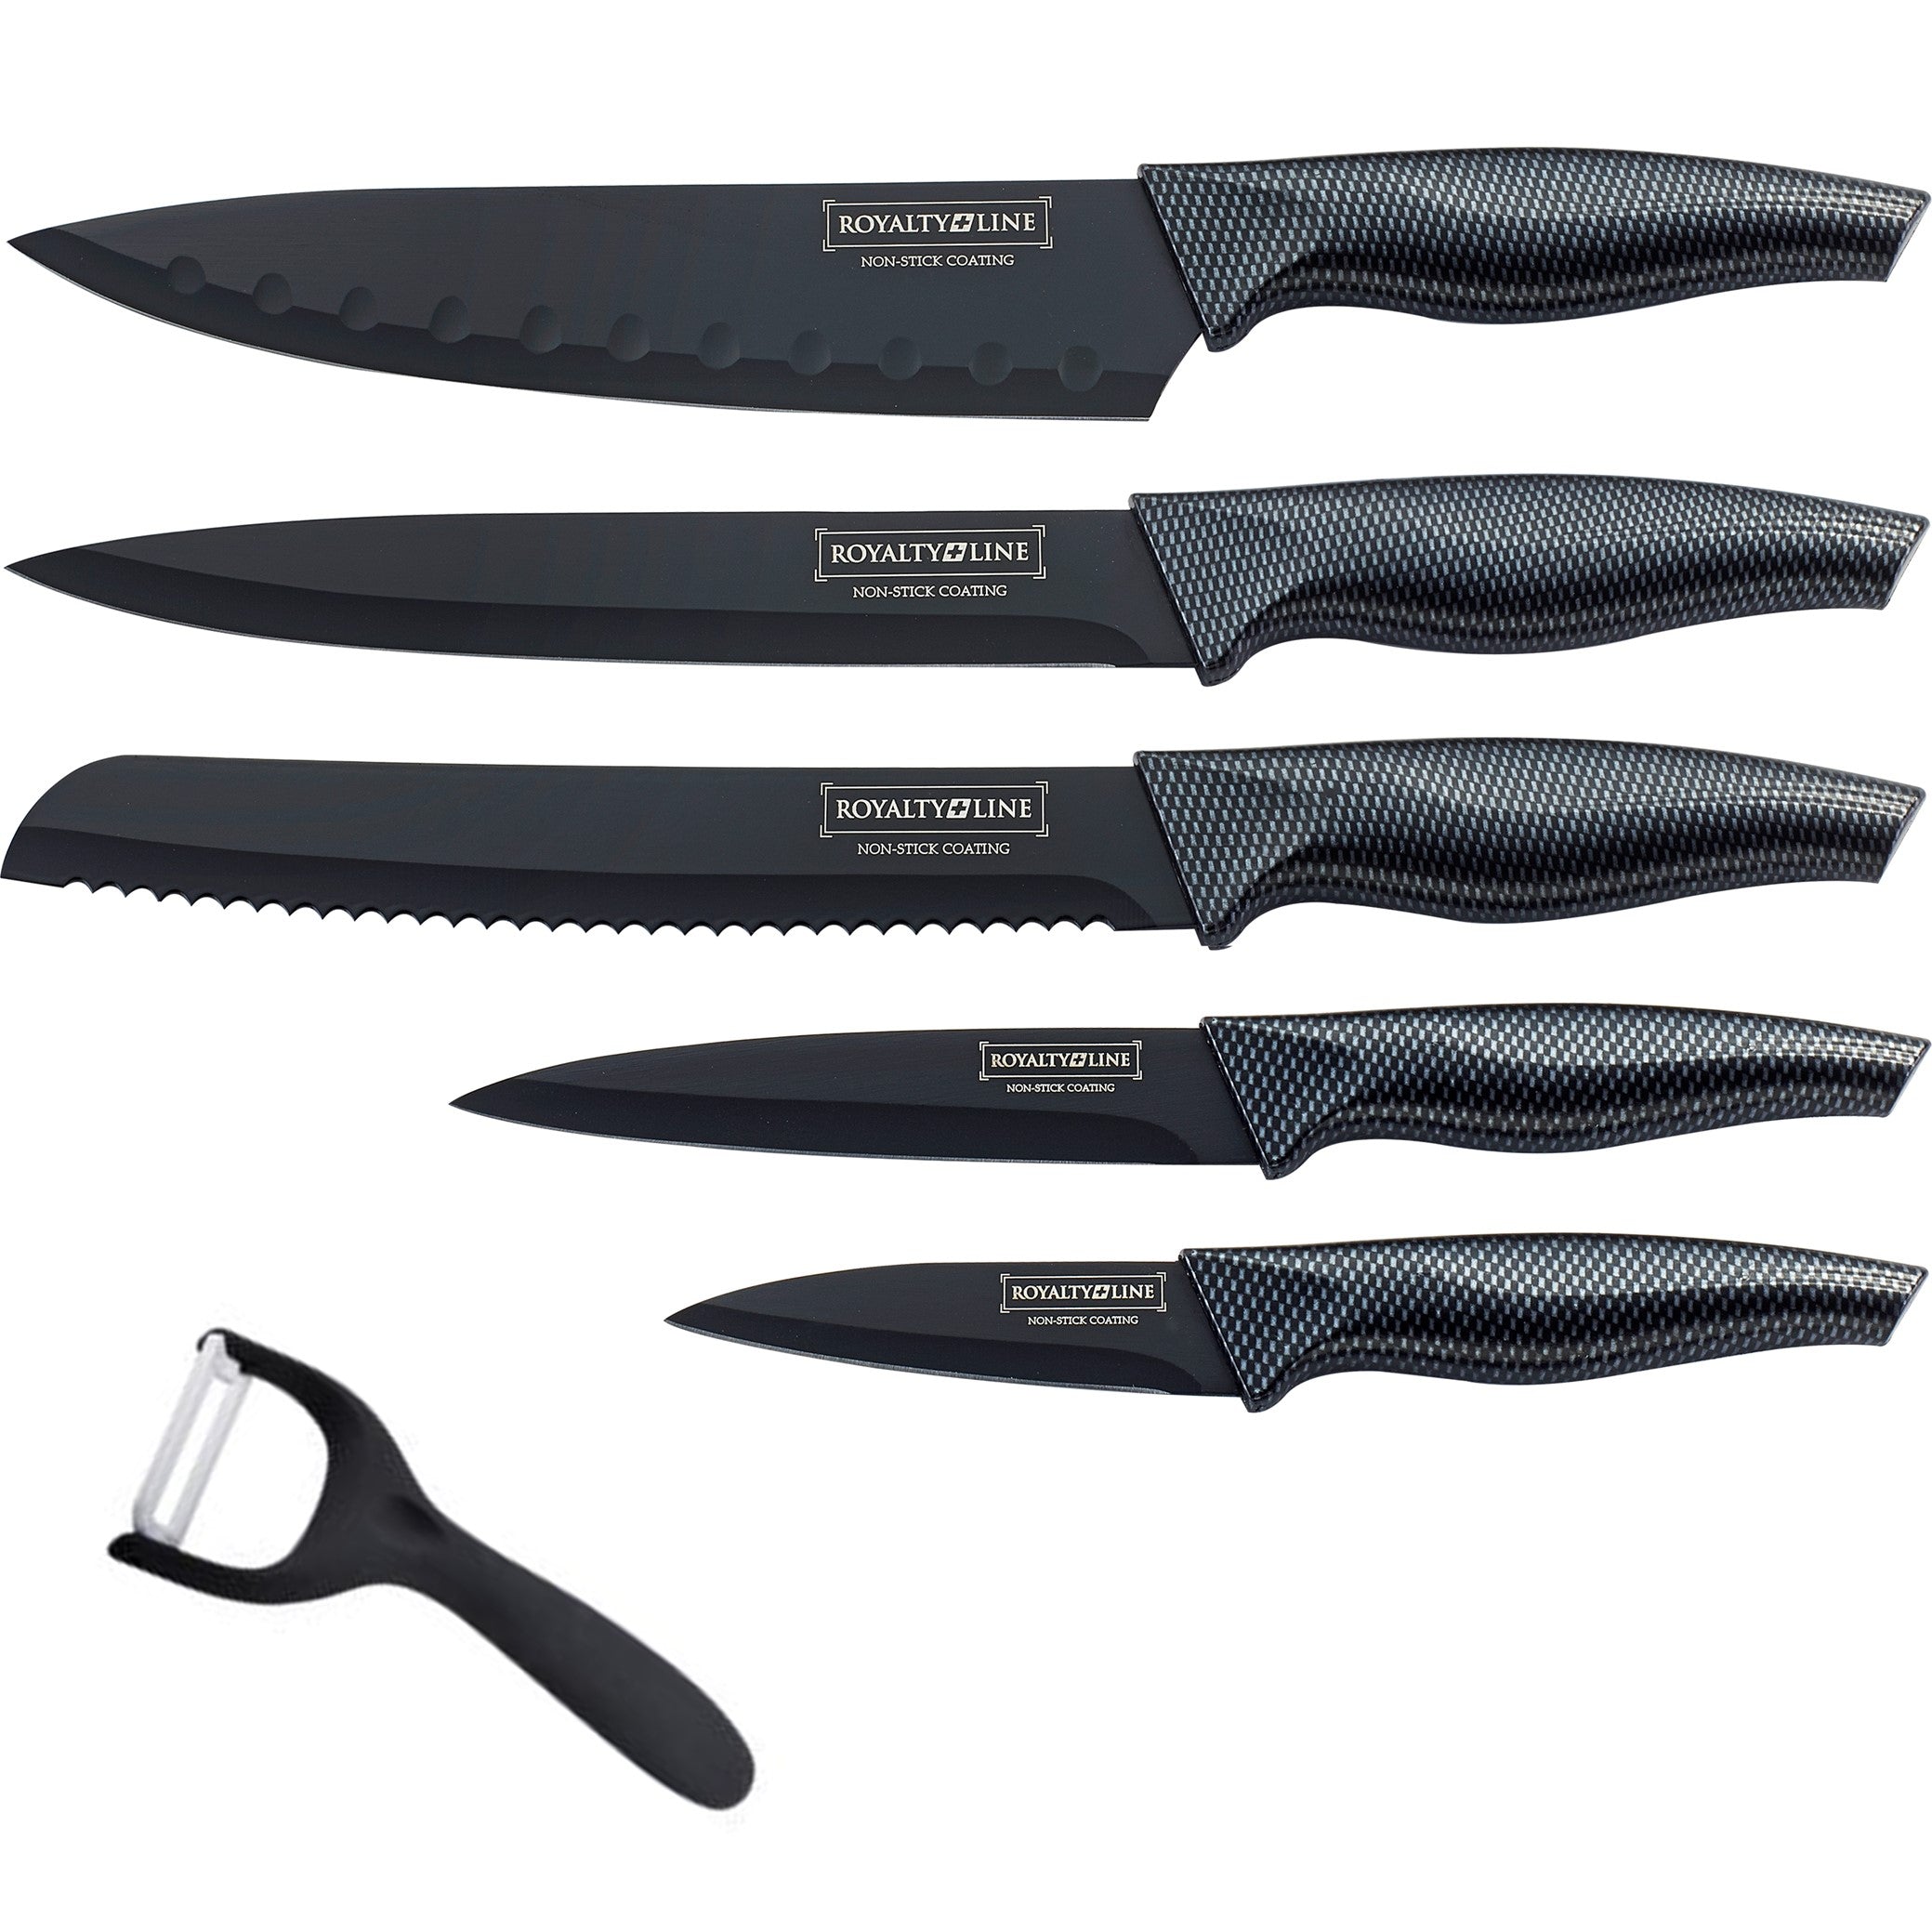 Billede af Knivsæt med 5 styks knive og skræller